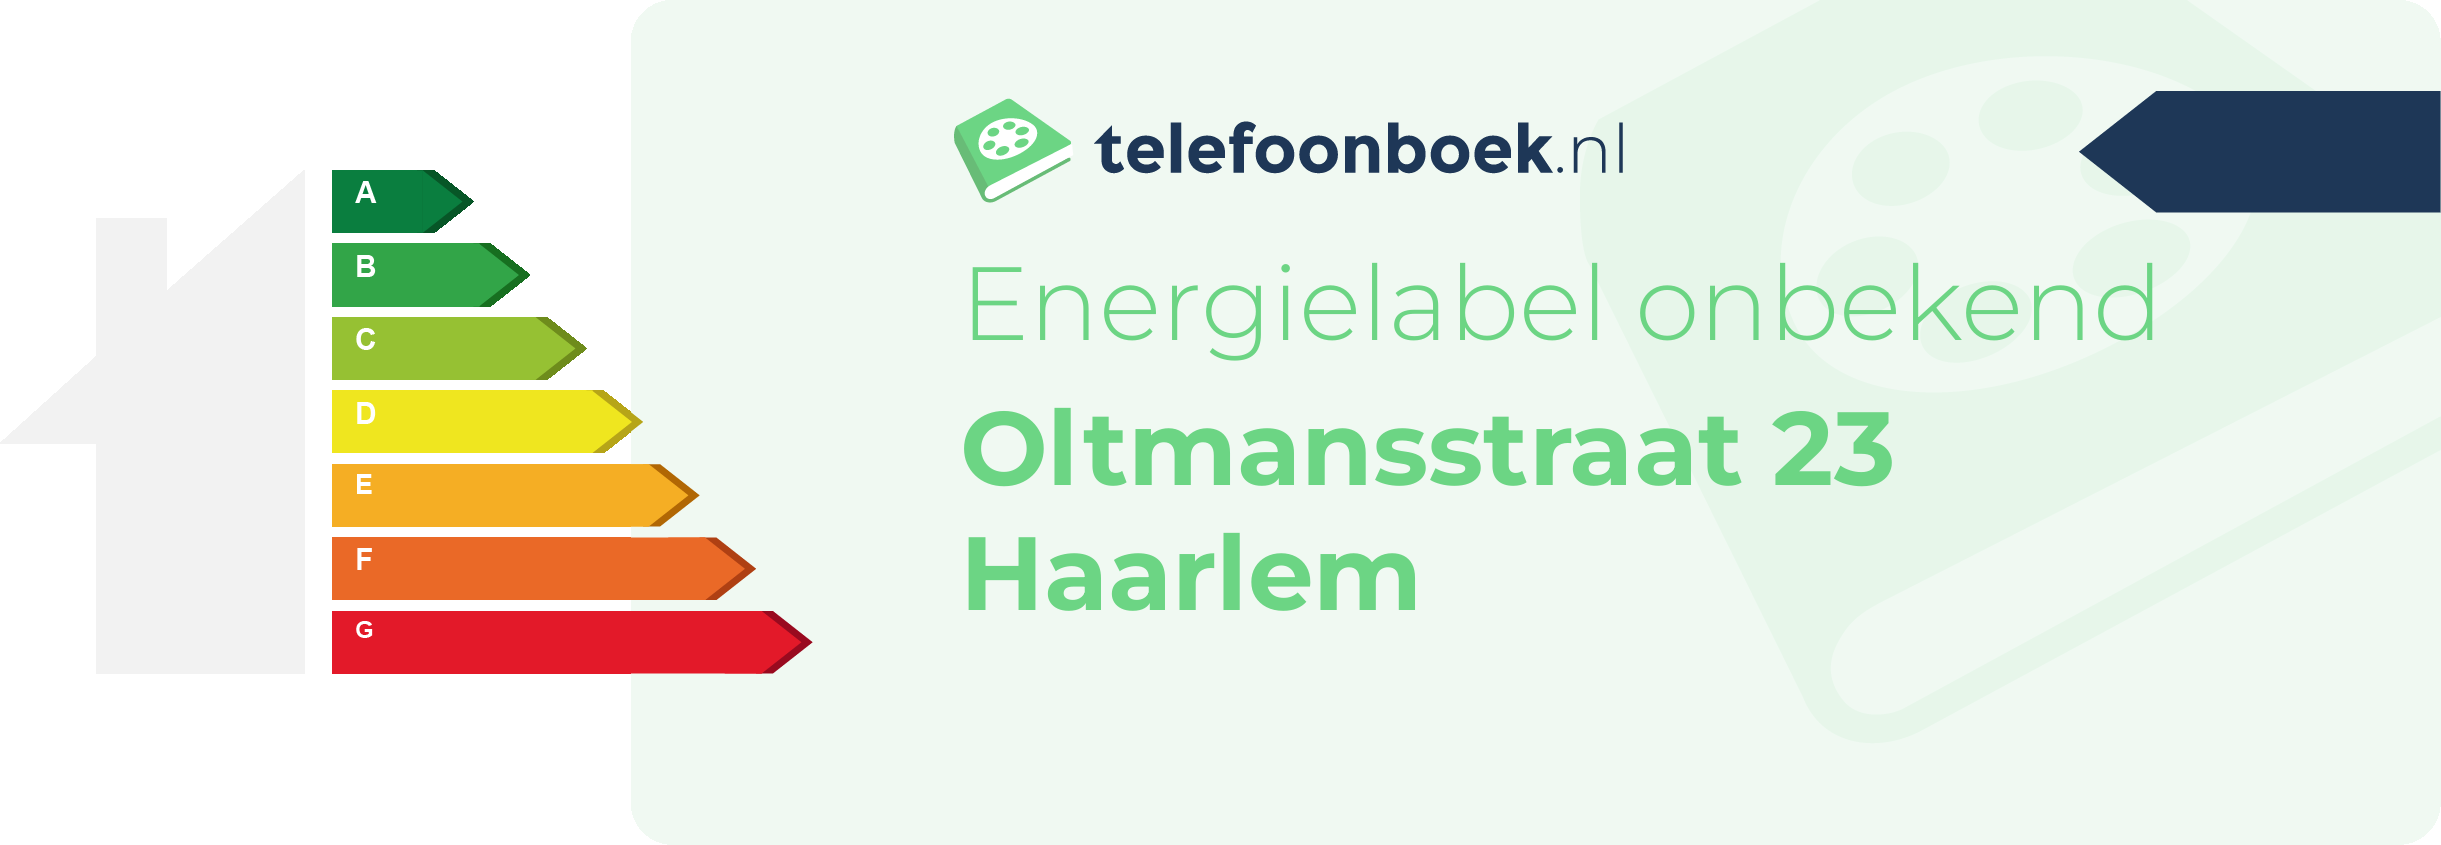 Energielabel Oltmansstraat 23 Haarlem